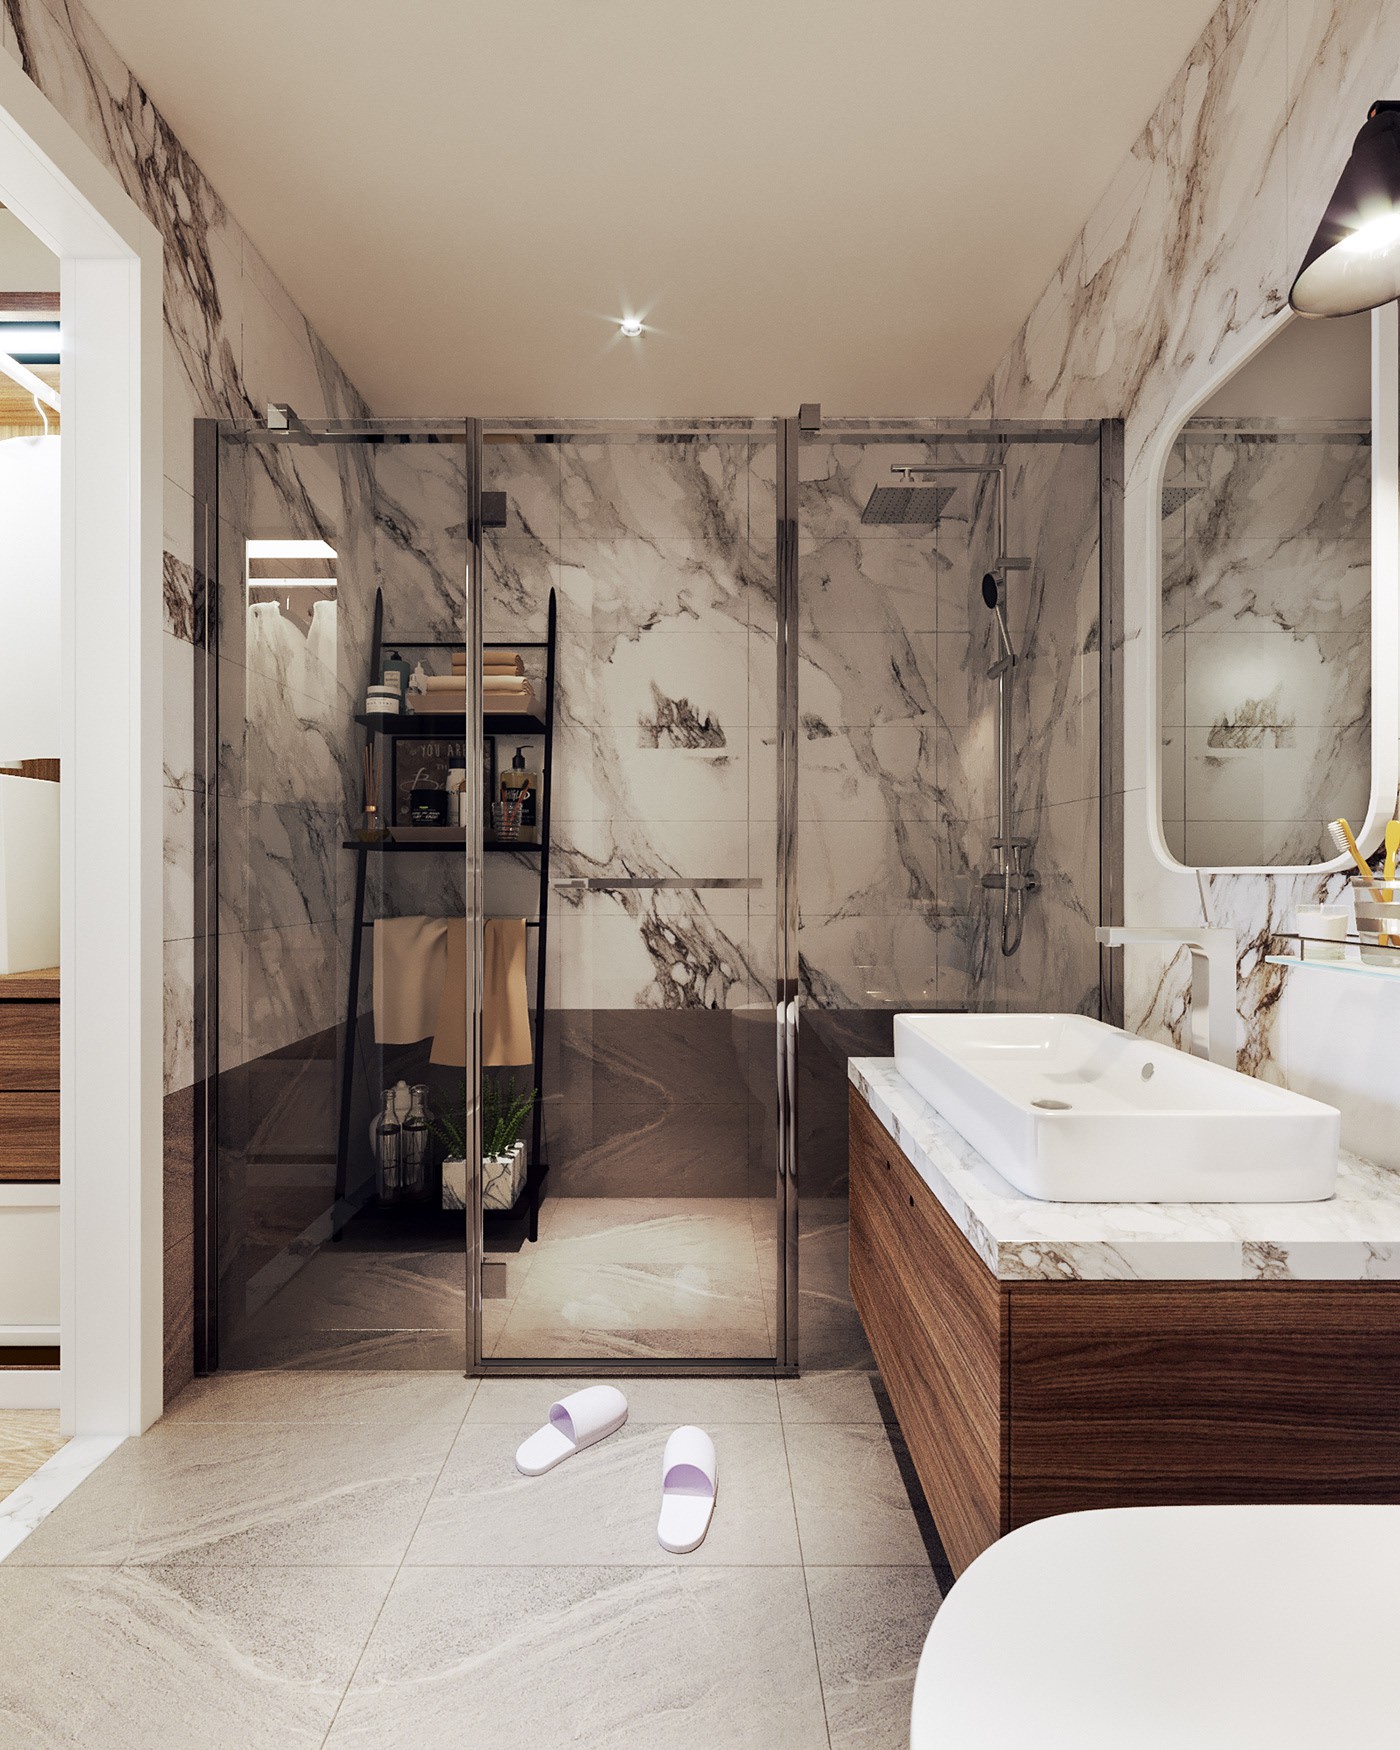 Hình ảnh phòng tắm hiện đại với tường, sàn ốp đá sang trọng, vách kính trong suốt